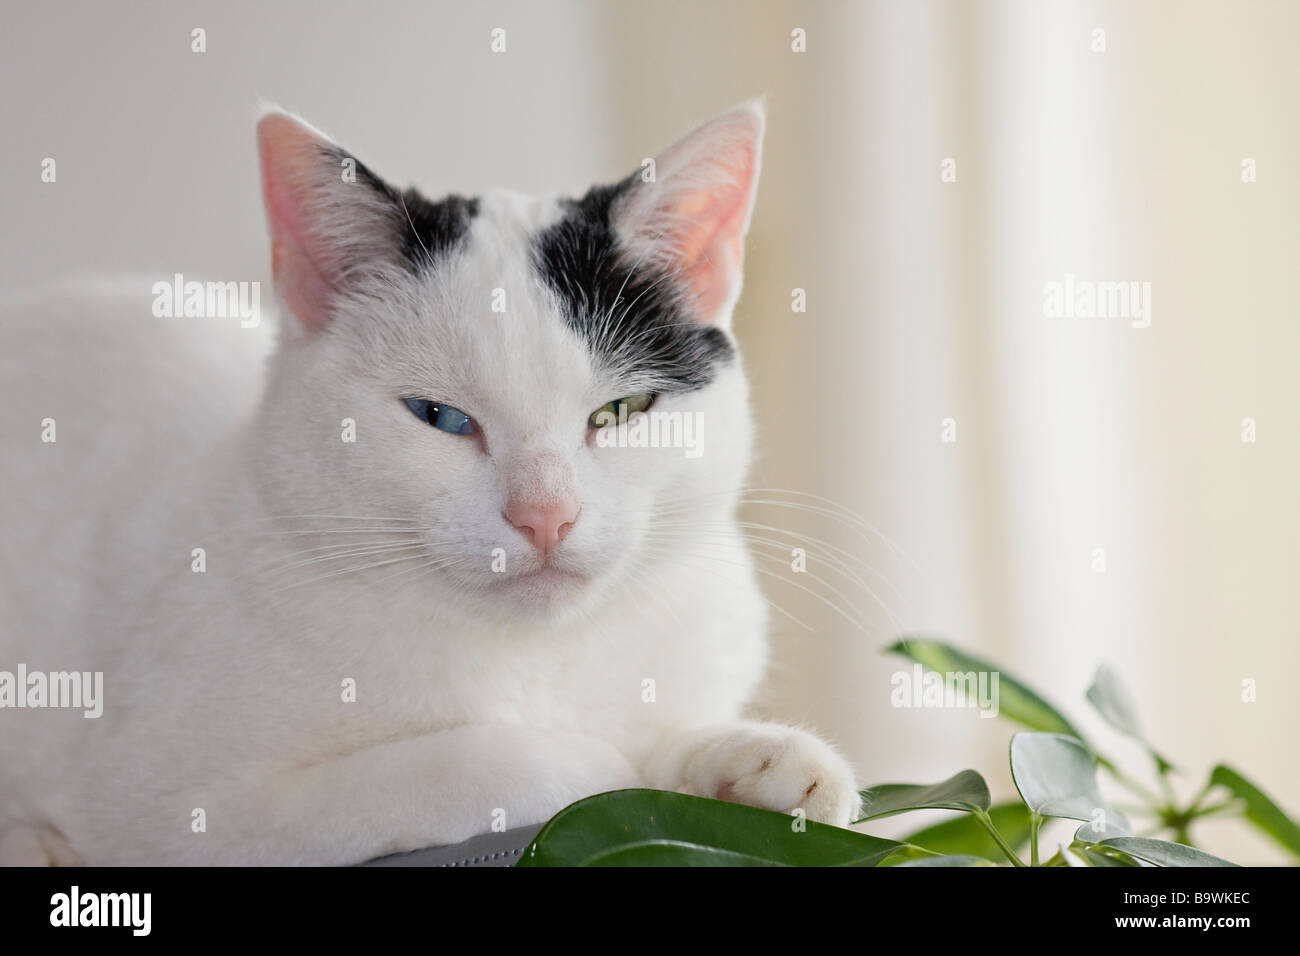 Eine junge Frau mit ungeraden Augen, schwarz-weißer Katze (Felis Catus) in auffälliger Stimmung, die direkt auf die Kamera blickt Stockfoto